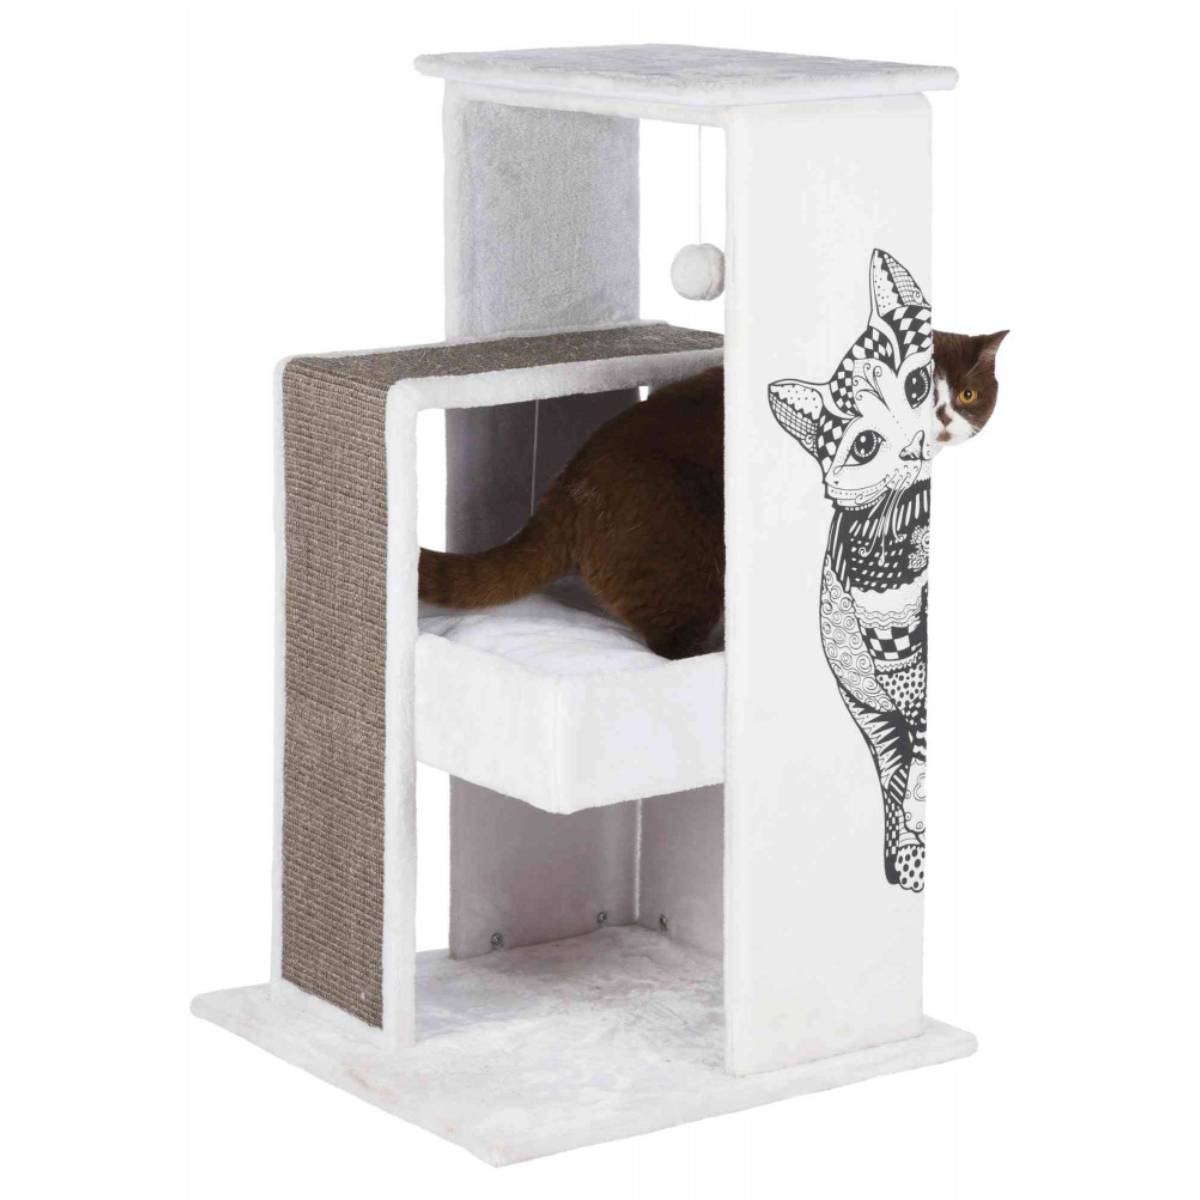 Домик чесалка для кошек. Trixie домик для кошки Giada, 112 см, чёрный/белый. Когтеточка kd066. Trixie для кошек игровой комплекс.